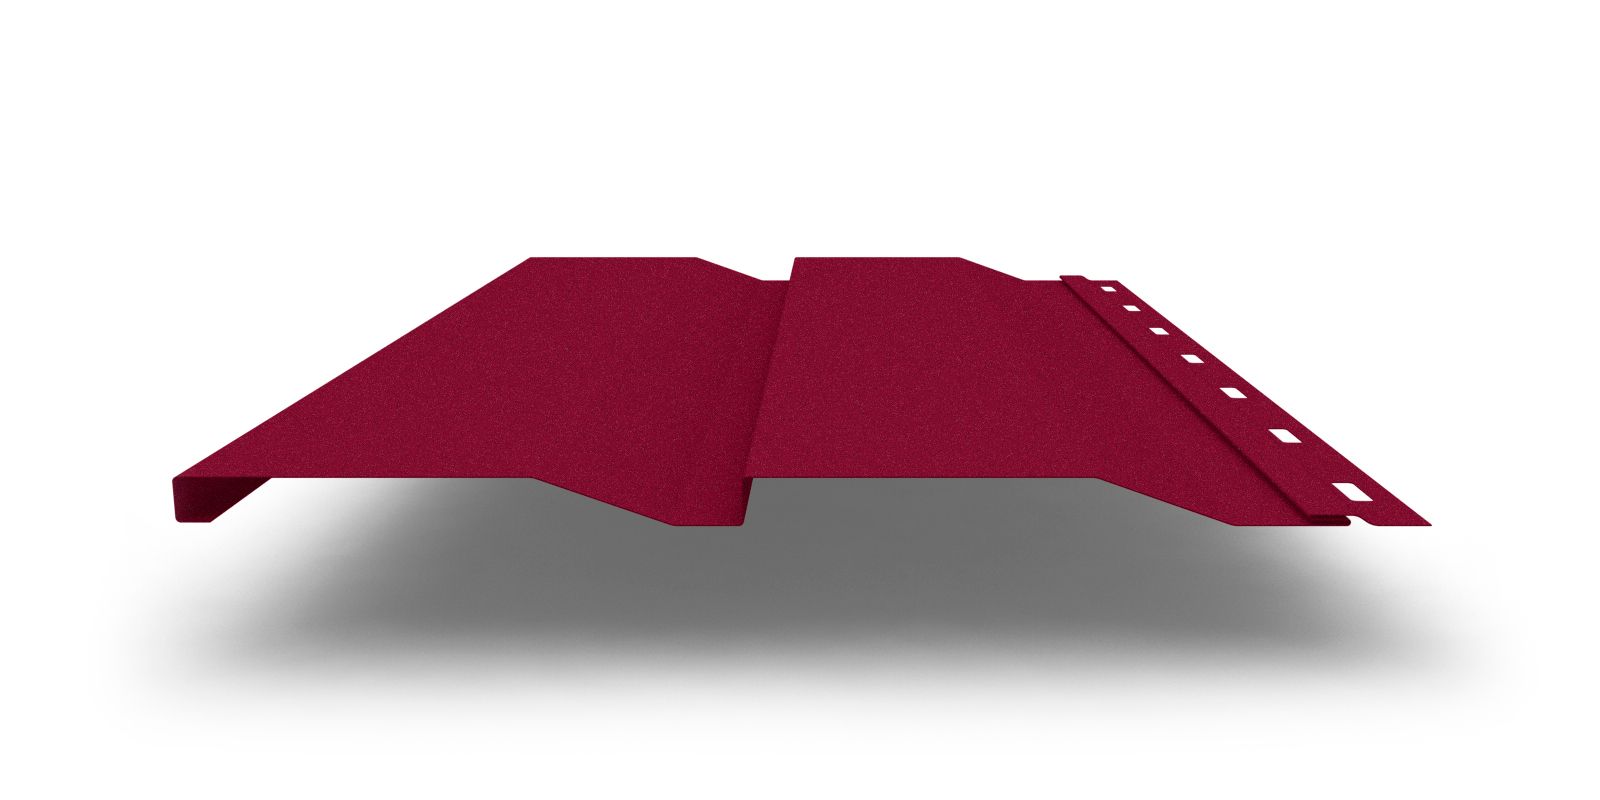 Металлический сайдинг Корабельная доска XL с покрытием Drap®, 0,45 мм, изображение, фото | Сталь ТД